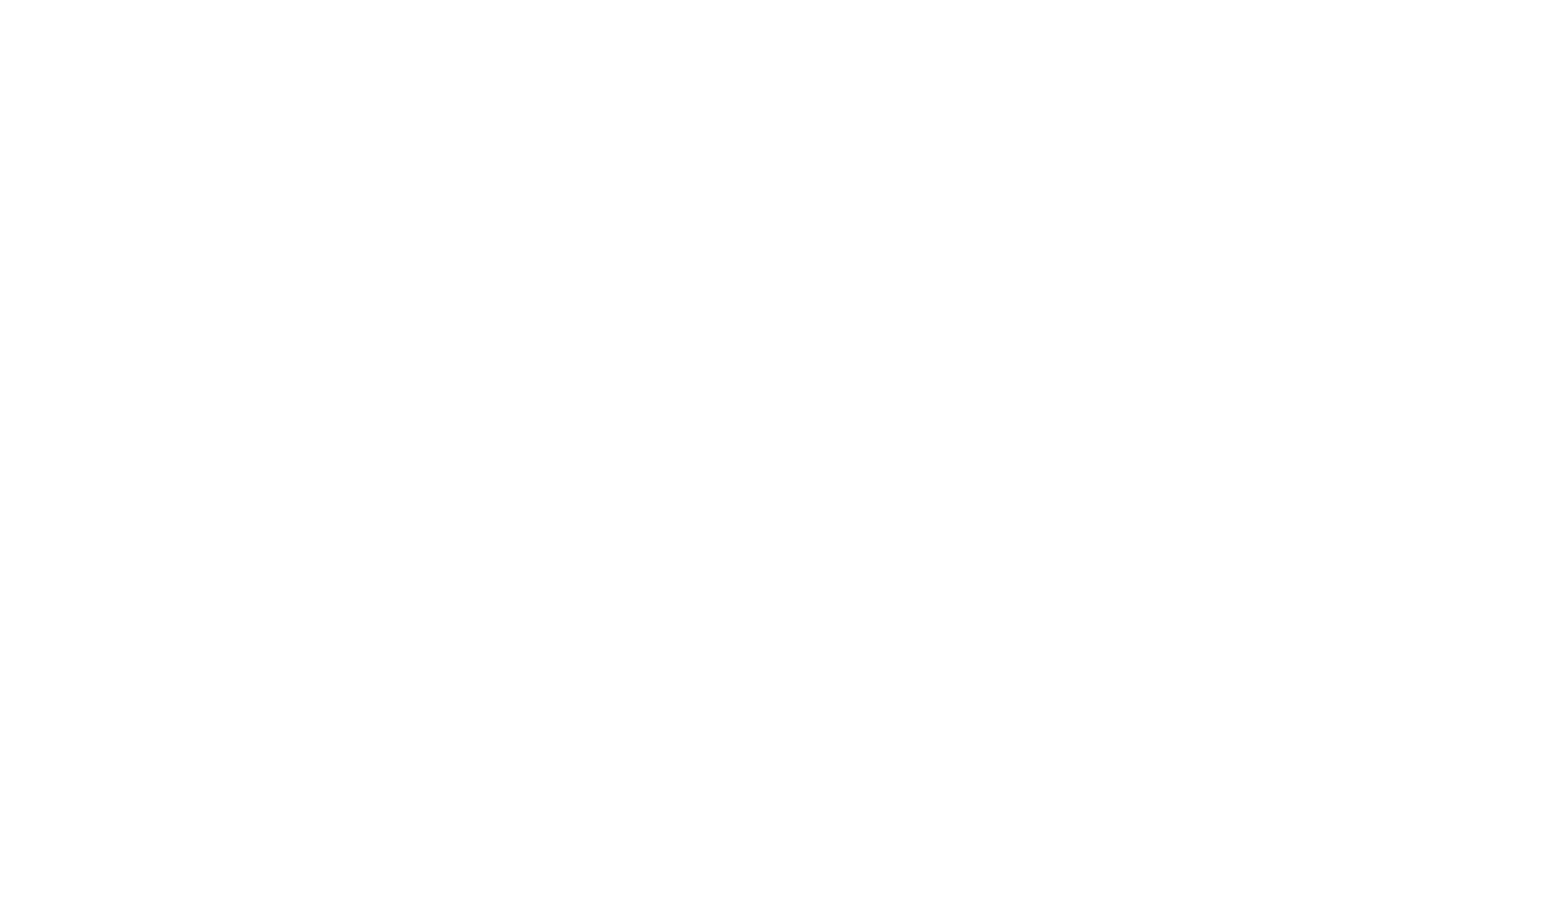 Compagnie Financière Richemont logo pour fonds sombres (PNG transparent)